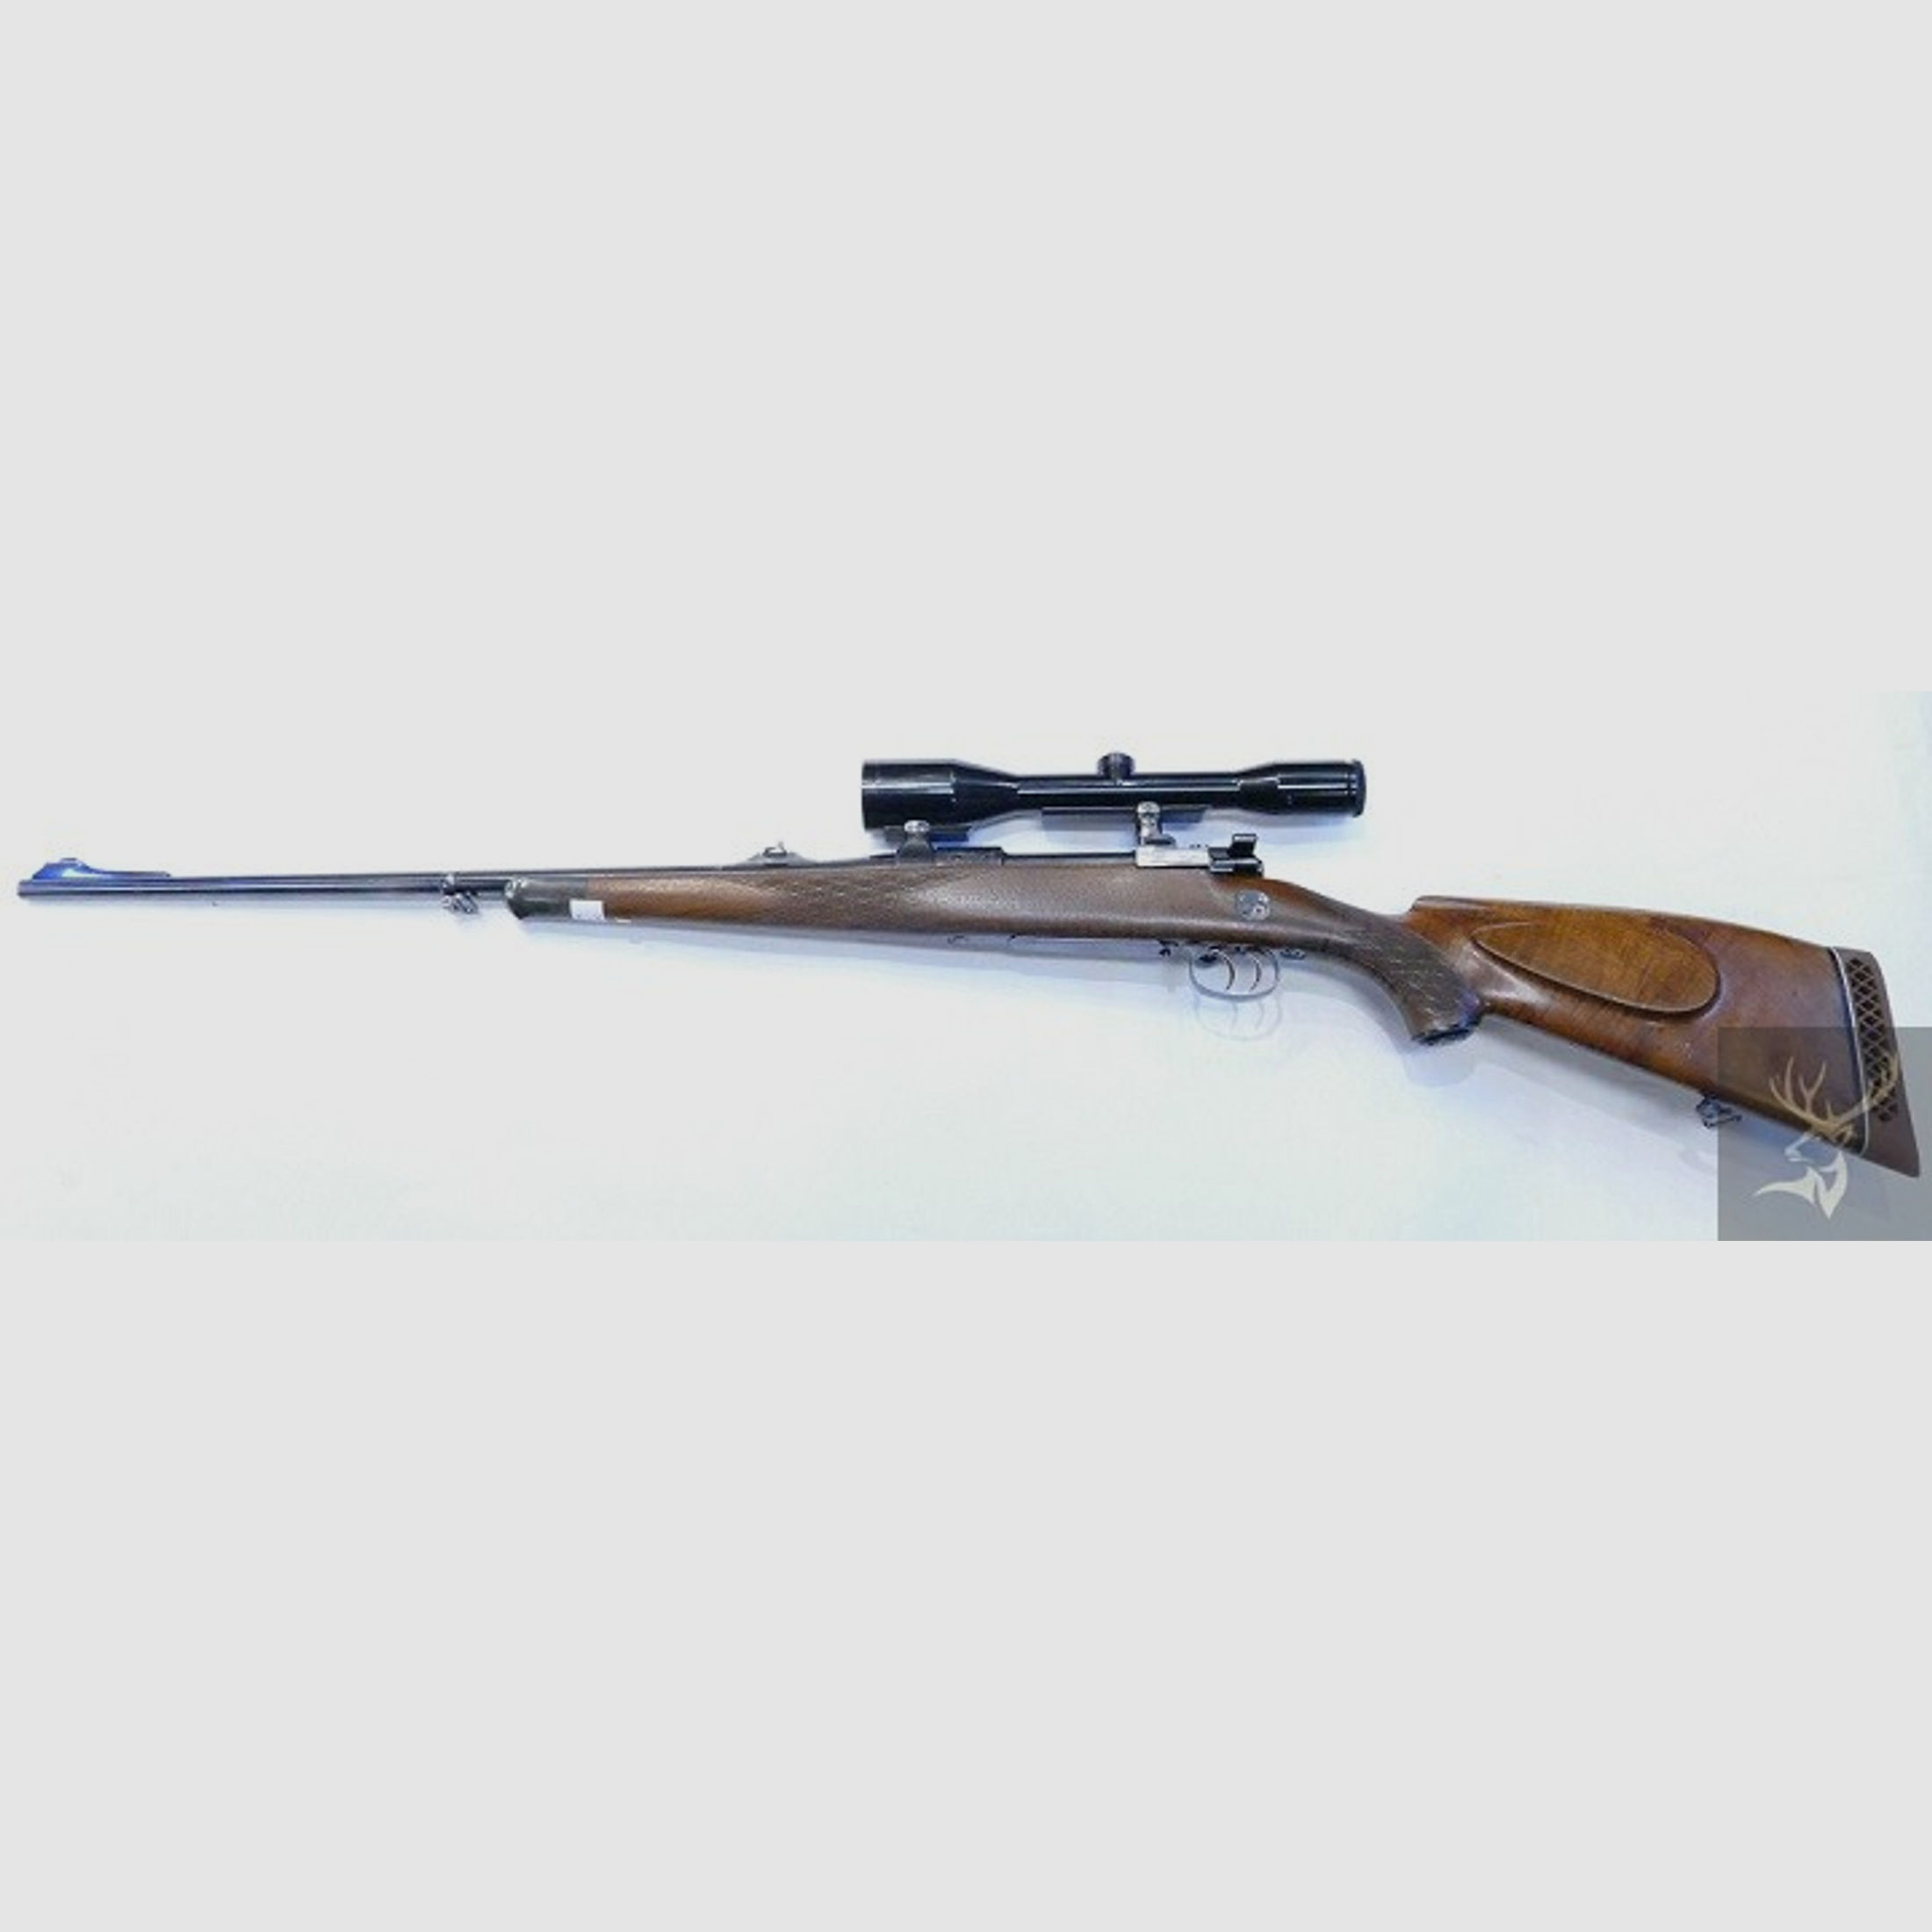 Mauser  Mod. 98 7x64